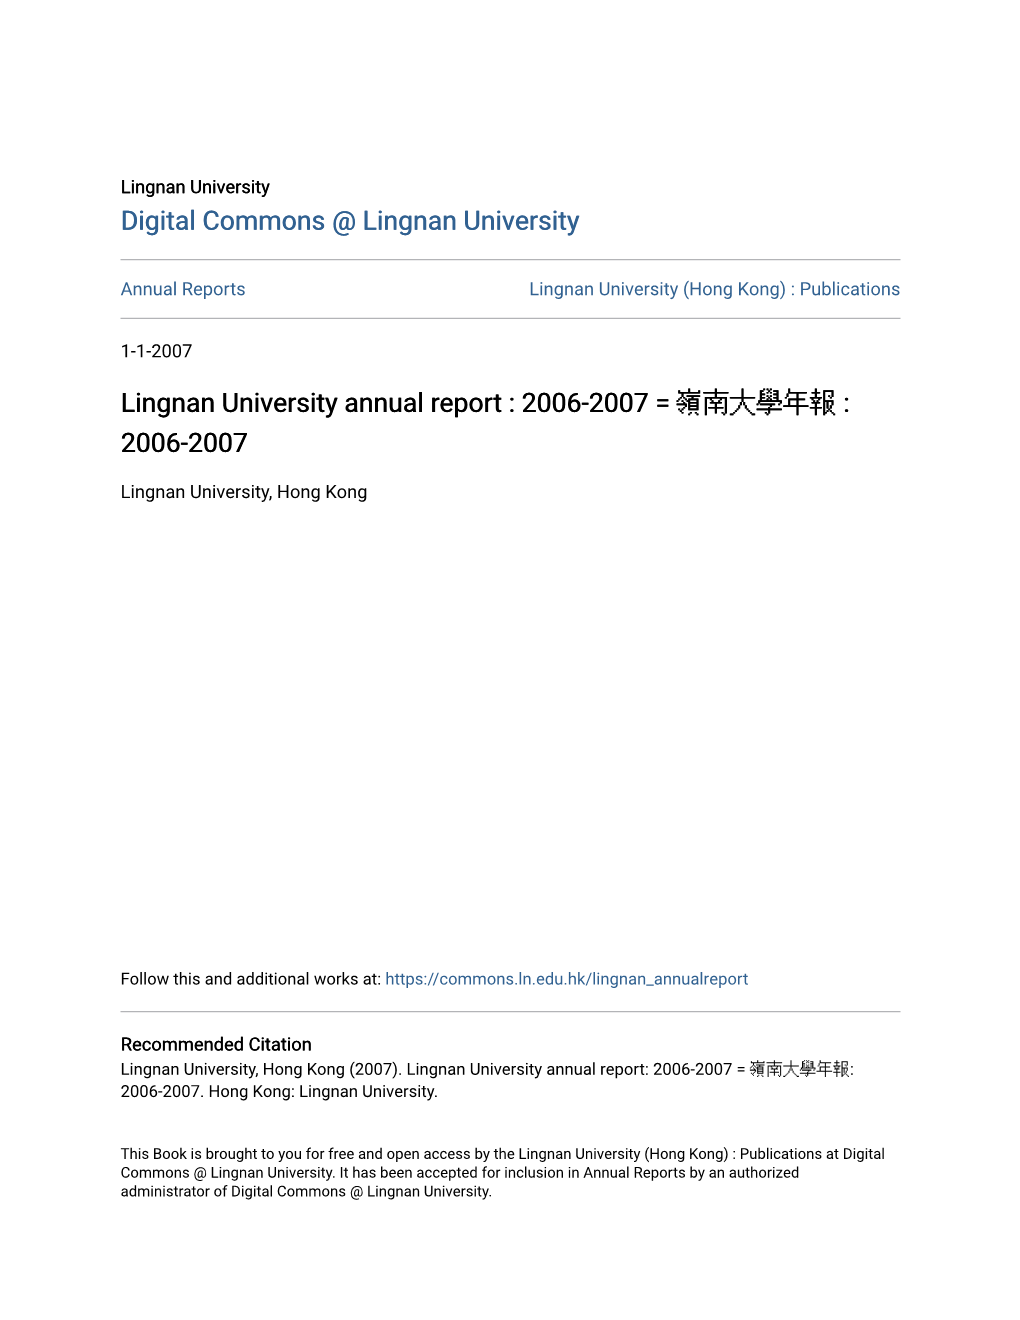 Lingnan University Annual Report : 2006-2007 = Å¶ºå“Šå¤§Åł¸Å¹´Å